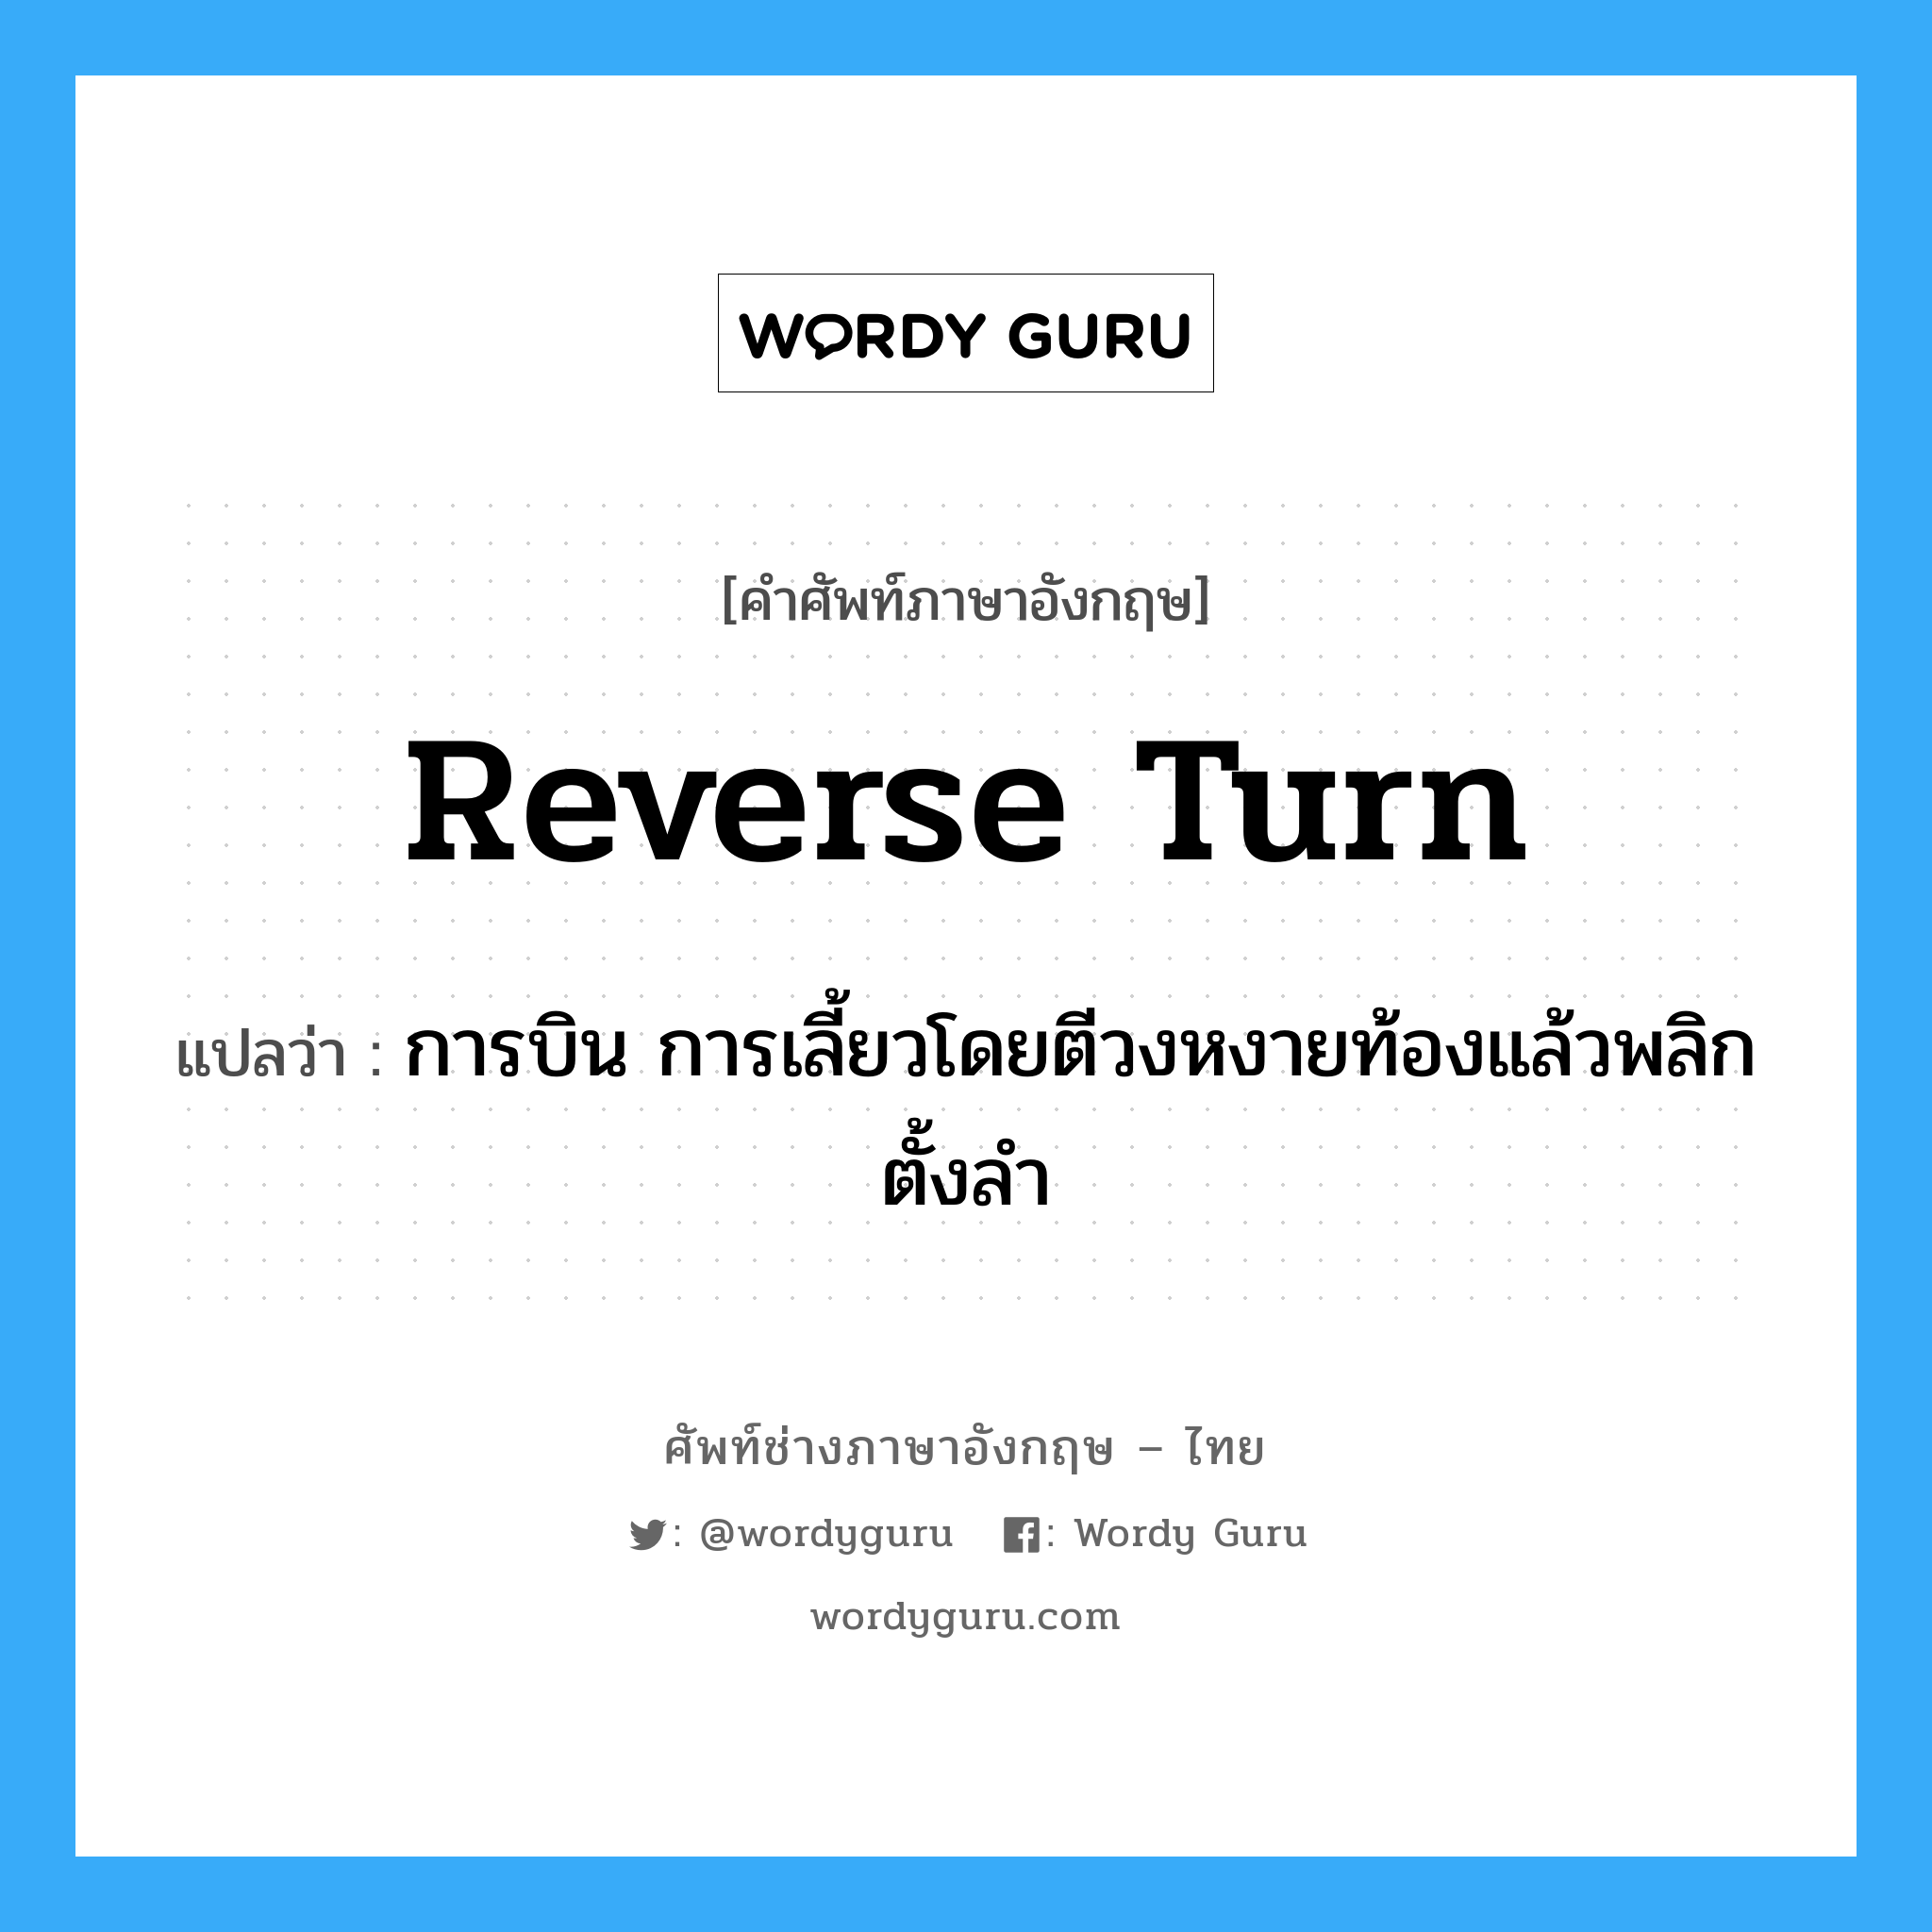 reverse turn แปลว่า?, คำศัพท์ช่างภาษาอังกฤษ - ไทย reverse turn คำศัพท์ภาษาอังกฤษ reverse turn แปลว่า การบิน การเลี้ยวโดยตีวงหงายท้องแล้วพลิกตั้งลำ